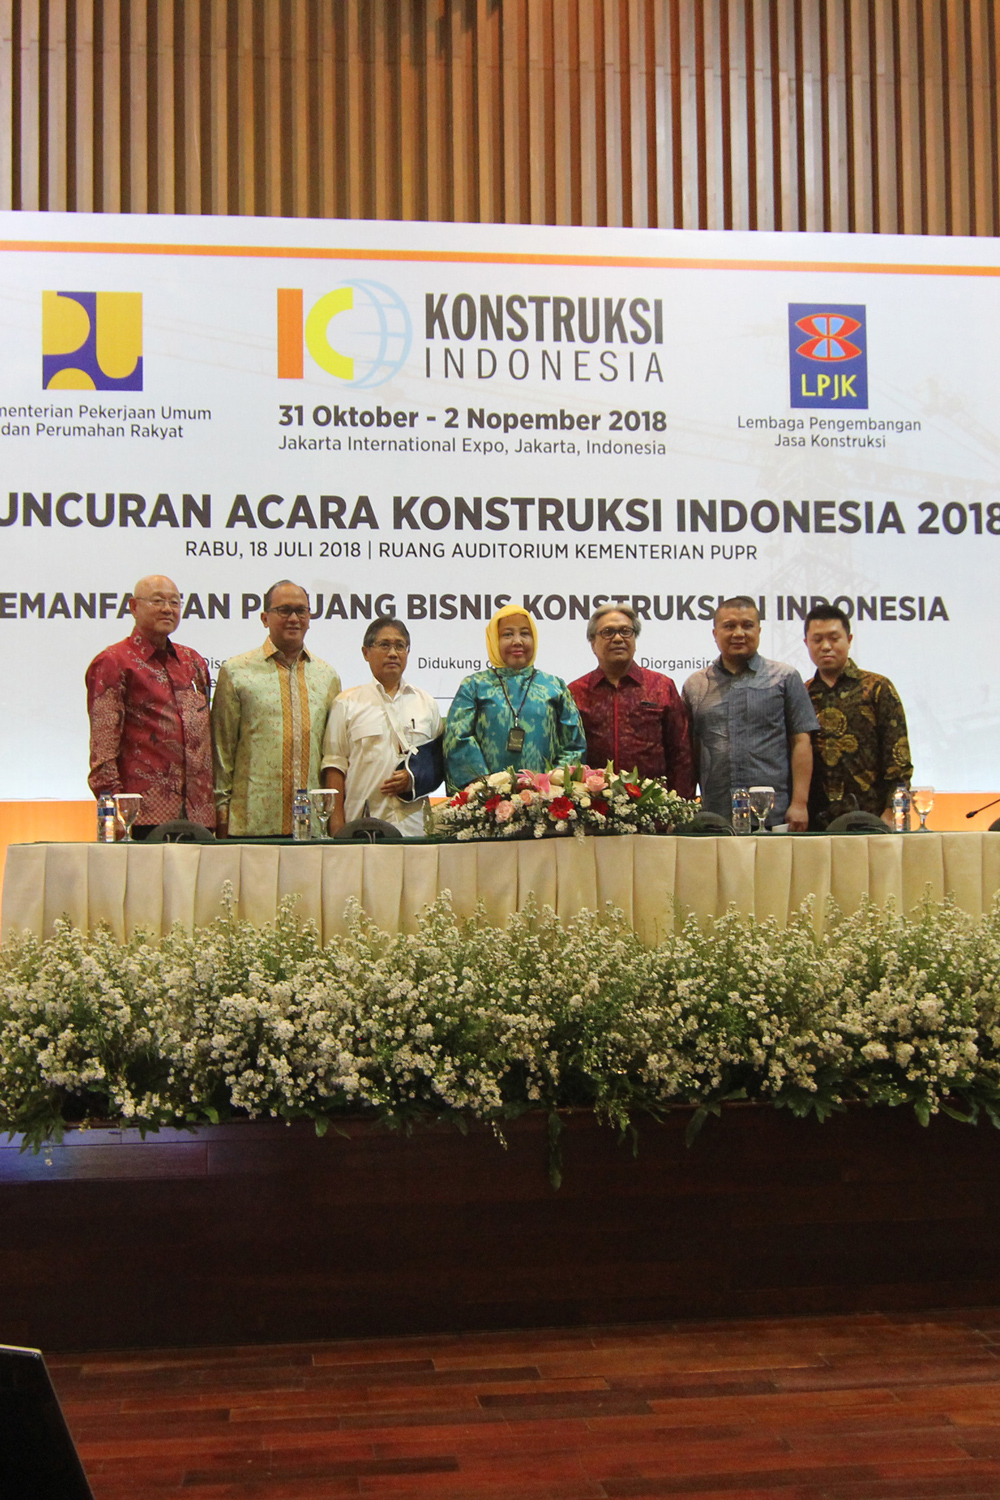 Launching KONSTRUKSI INDONESIA 2018